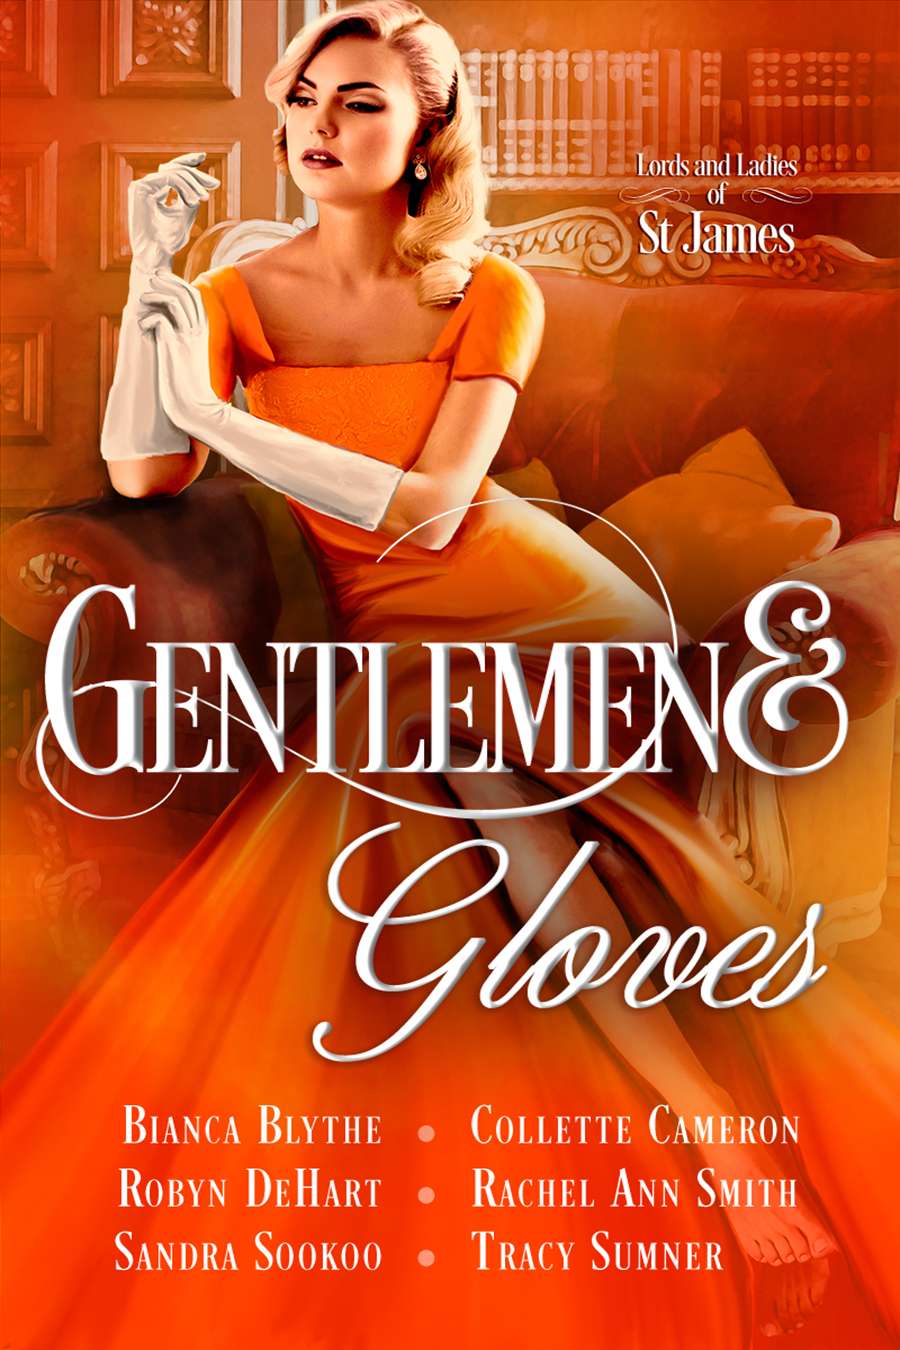 Gentlemen and Gloves 40